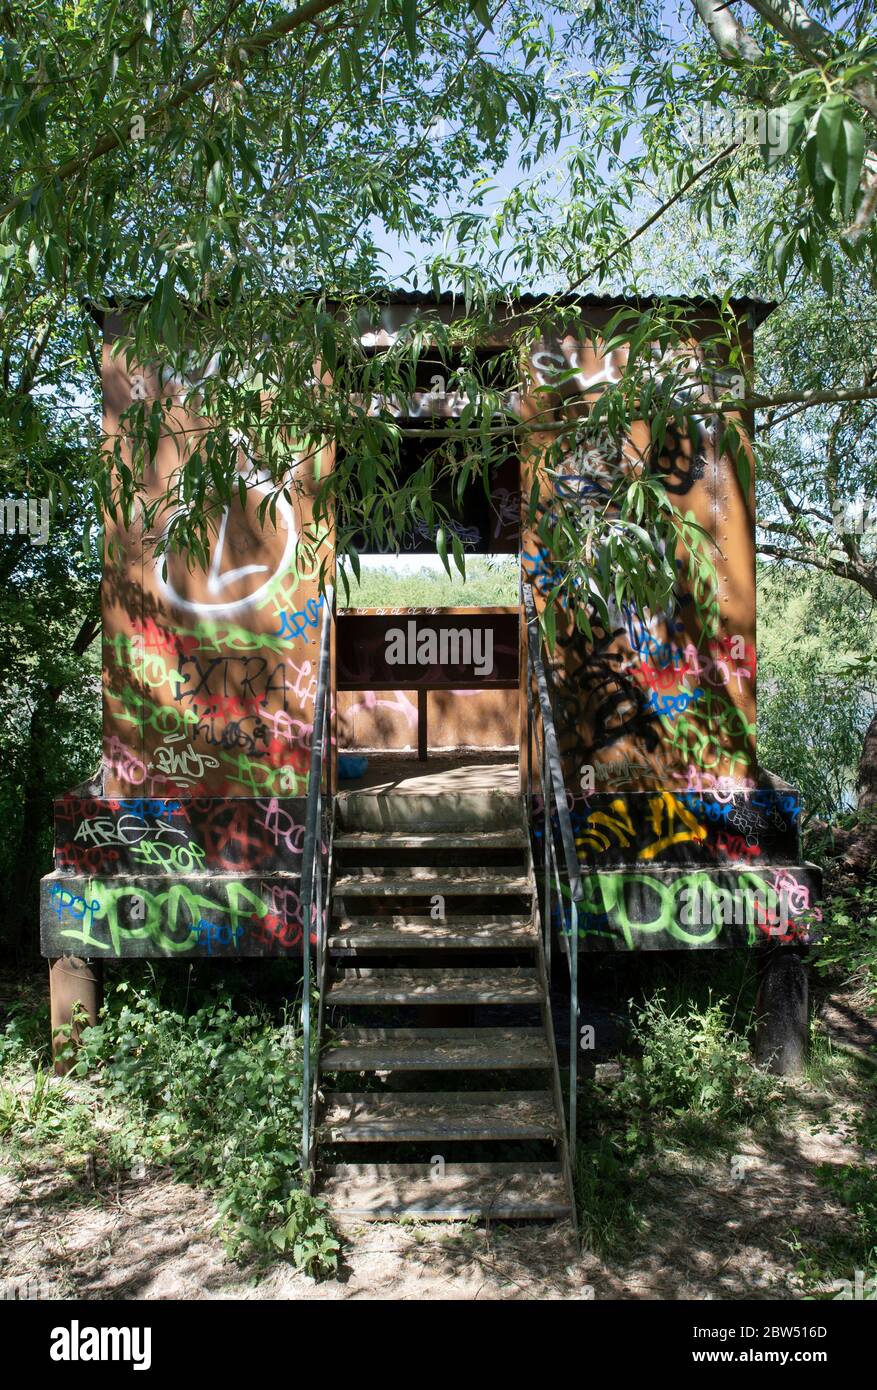 Cache d'observation des oiseaux couvert de graffiti, Brant Reservoir, également connu sous le nom de Welsh Harp Reservoir, Londres, Royaume-Uni Banque D'Images